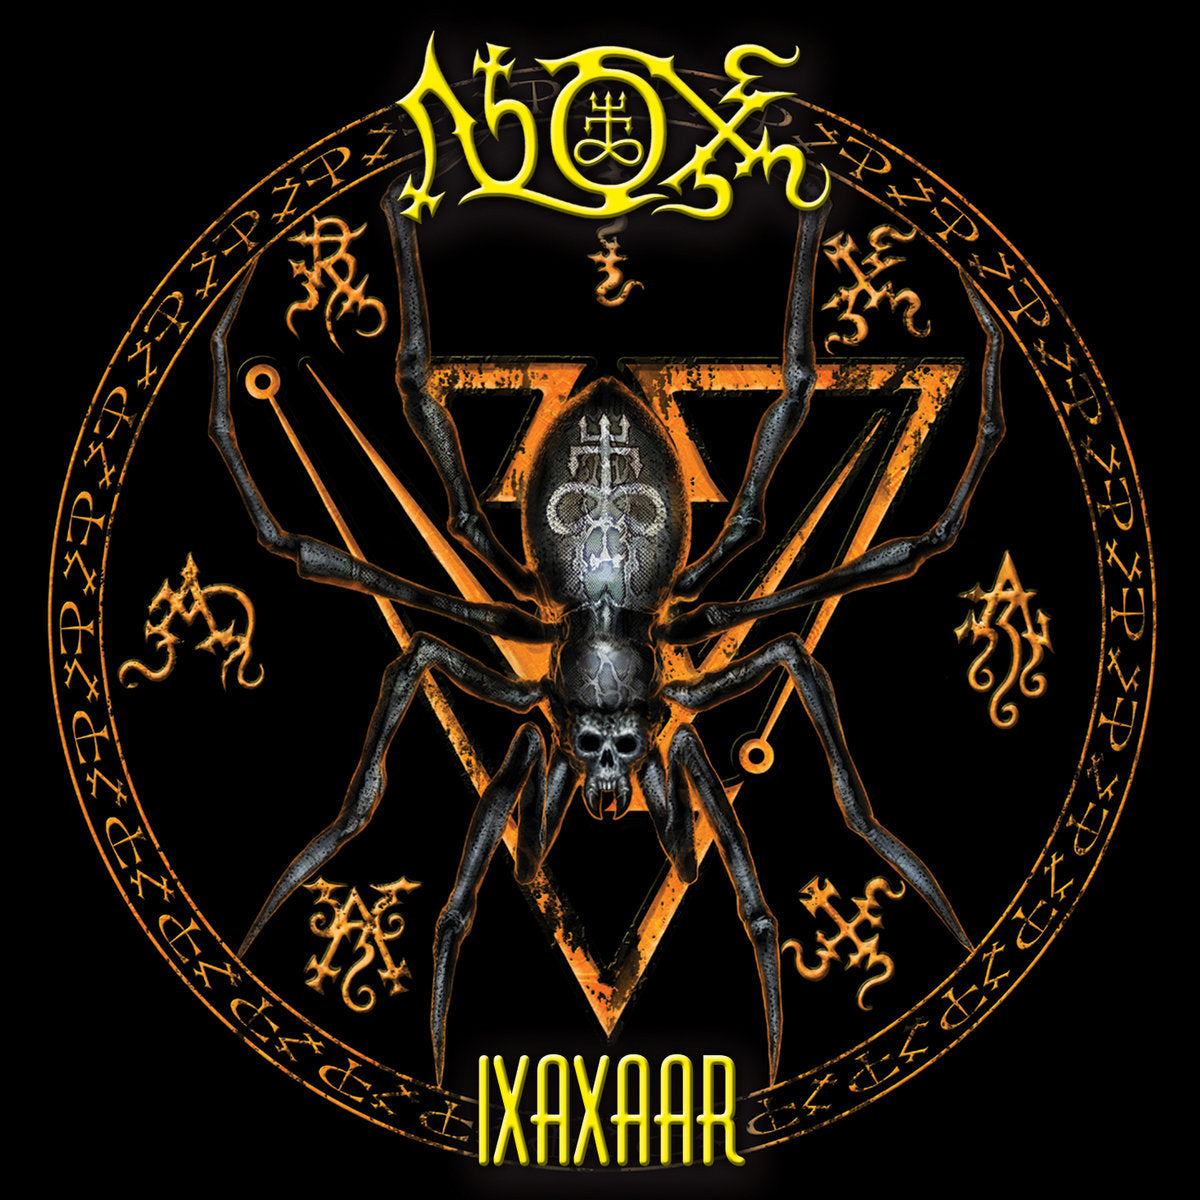 Nox "Ixaxaar" Digipak CD